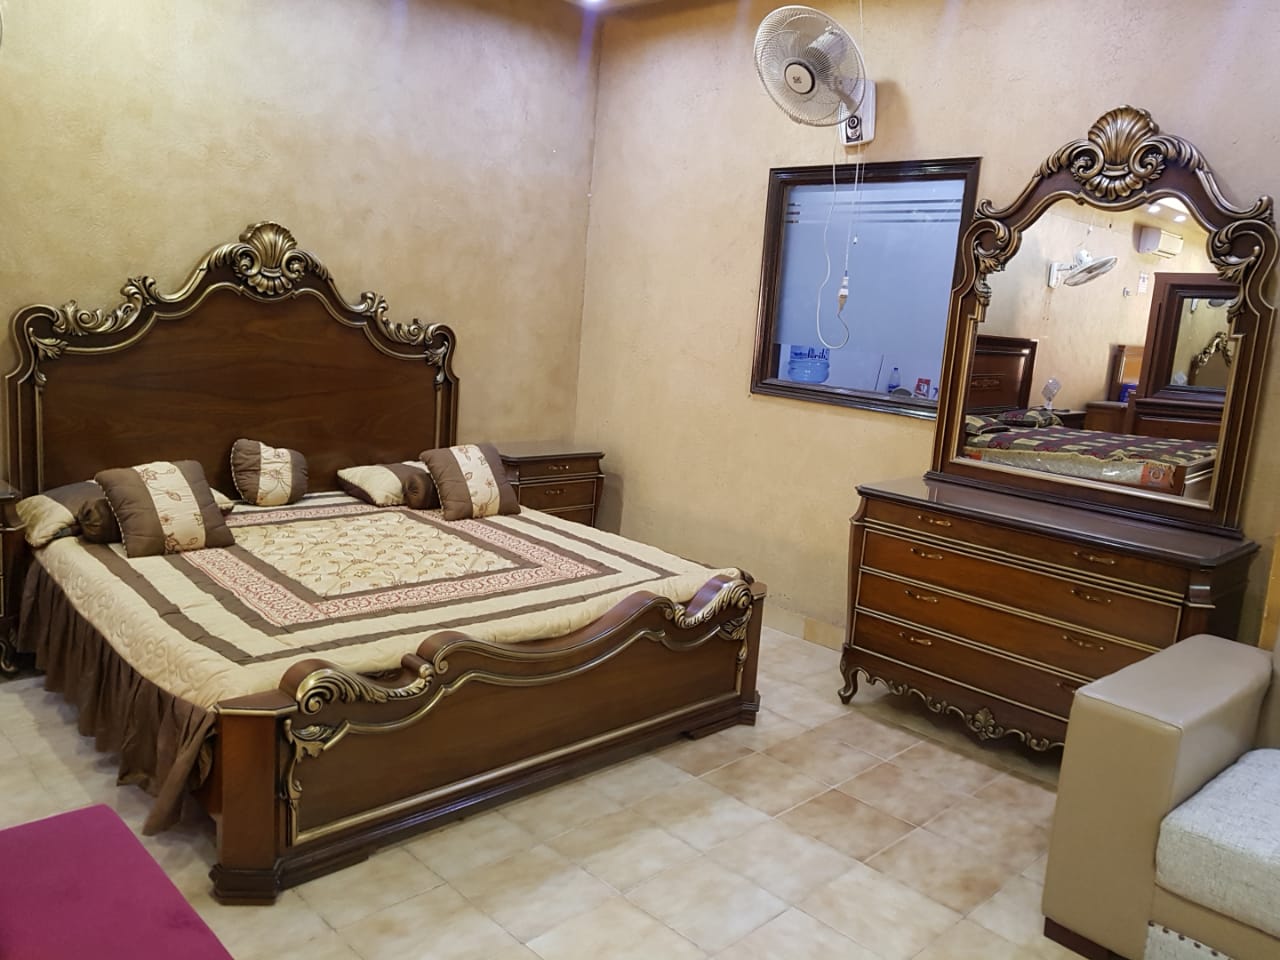 bridal bedroom furniture design karachi